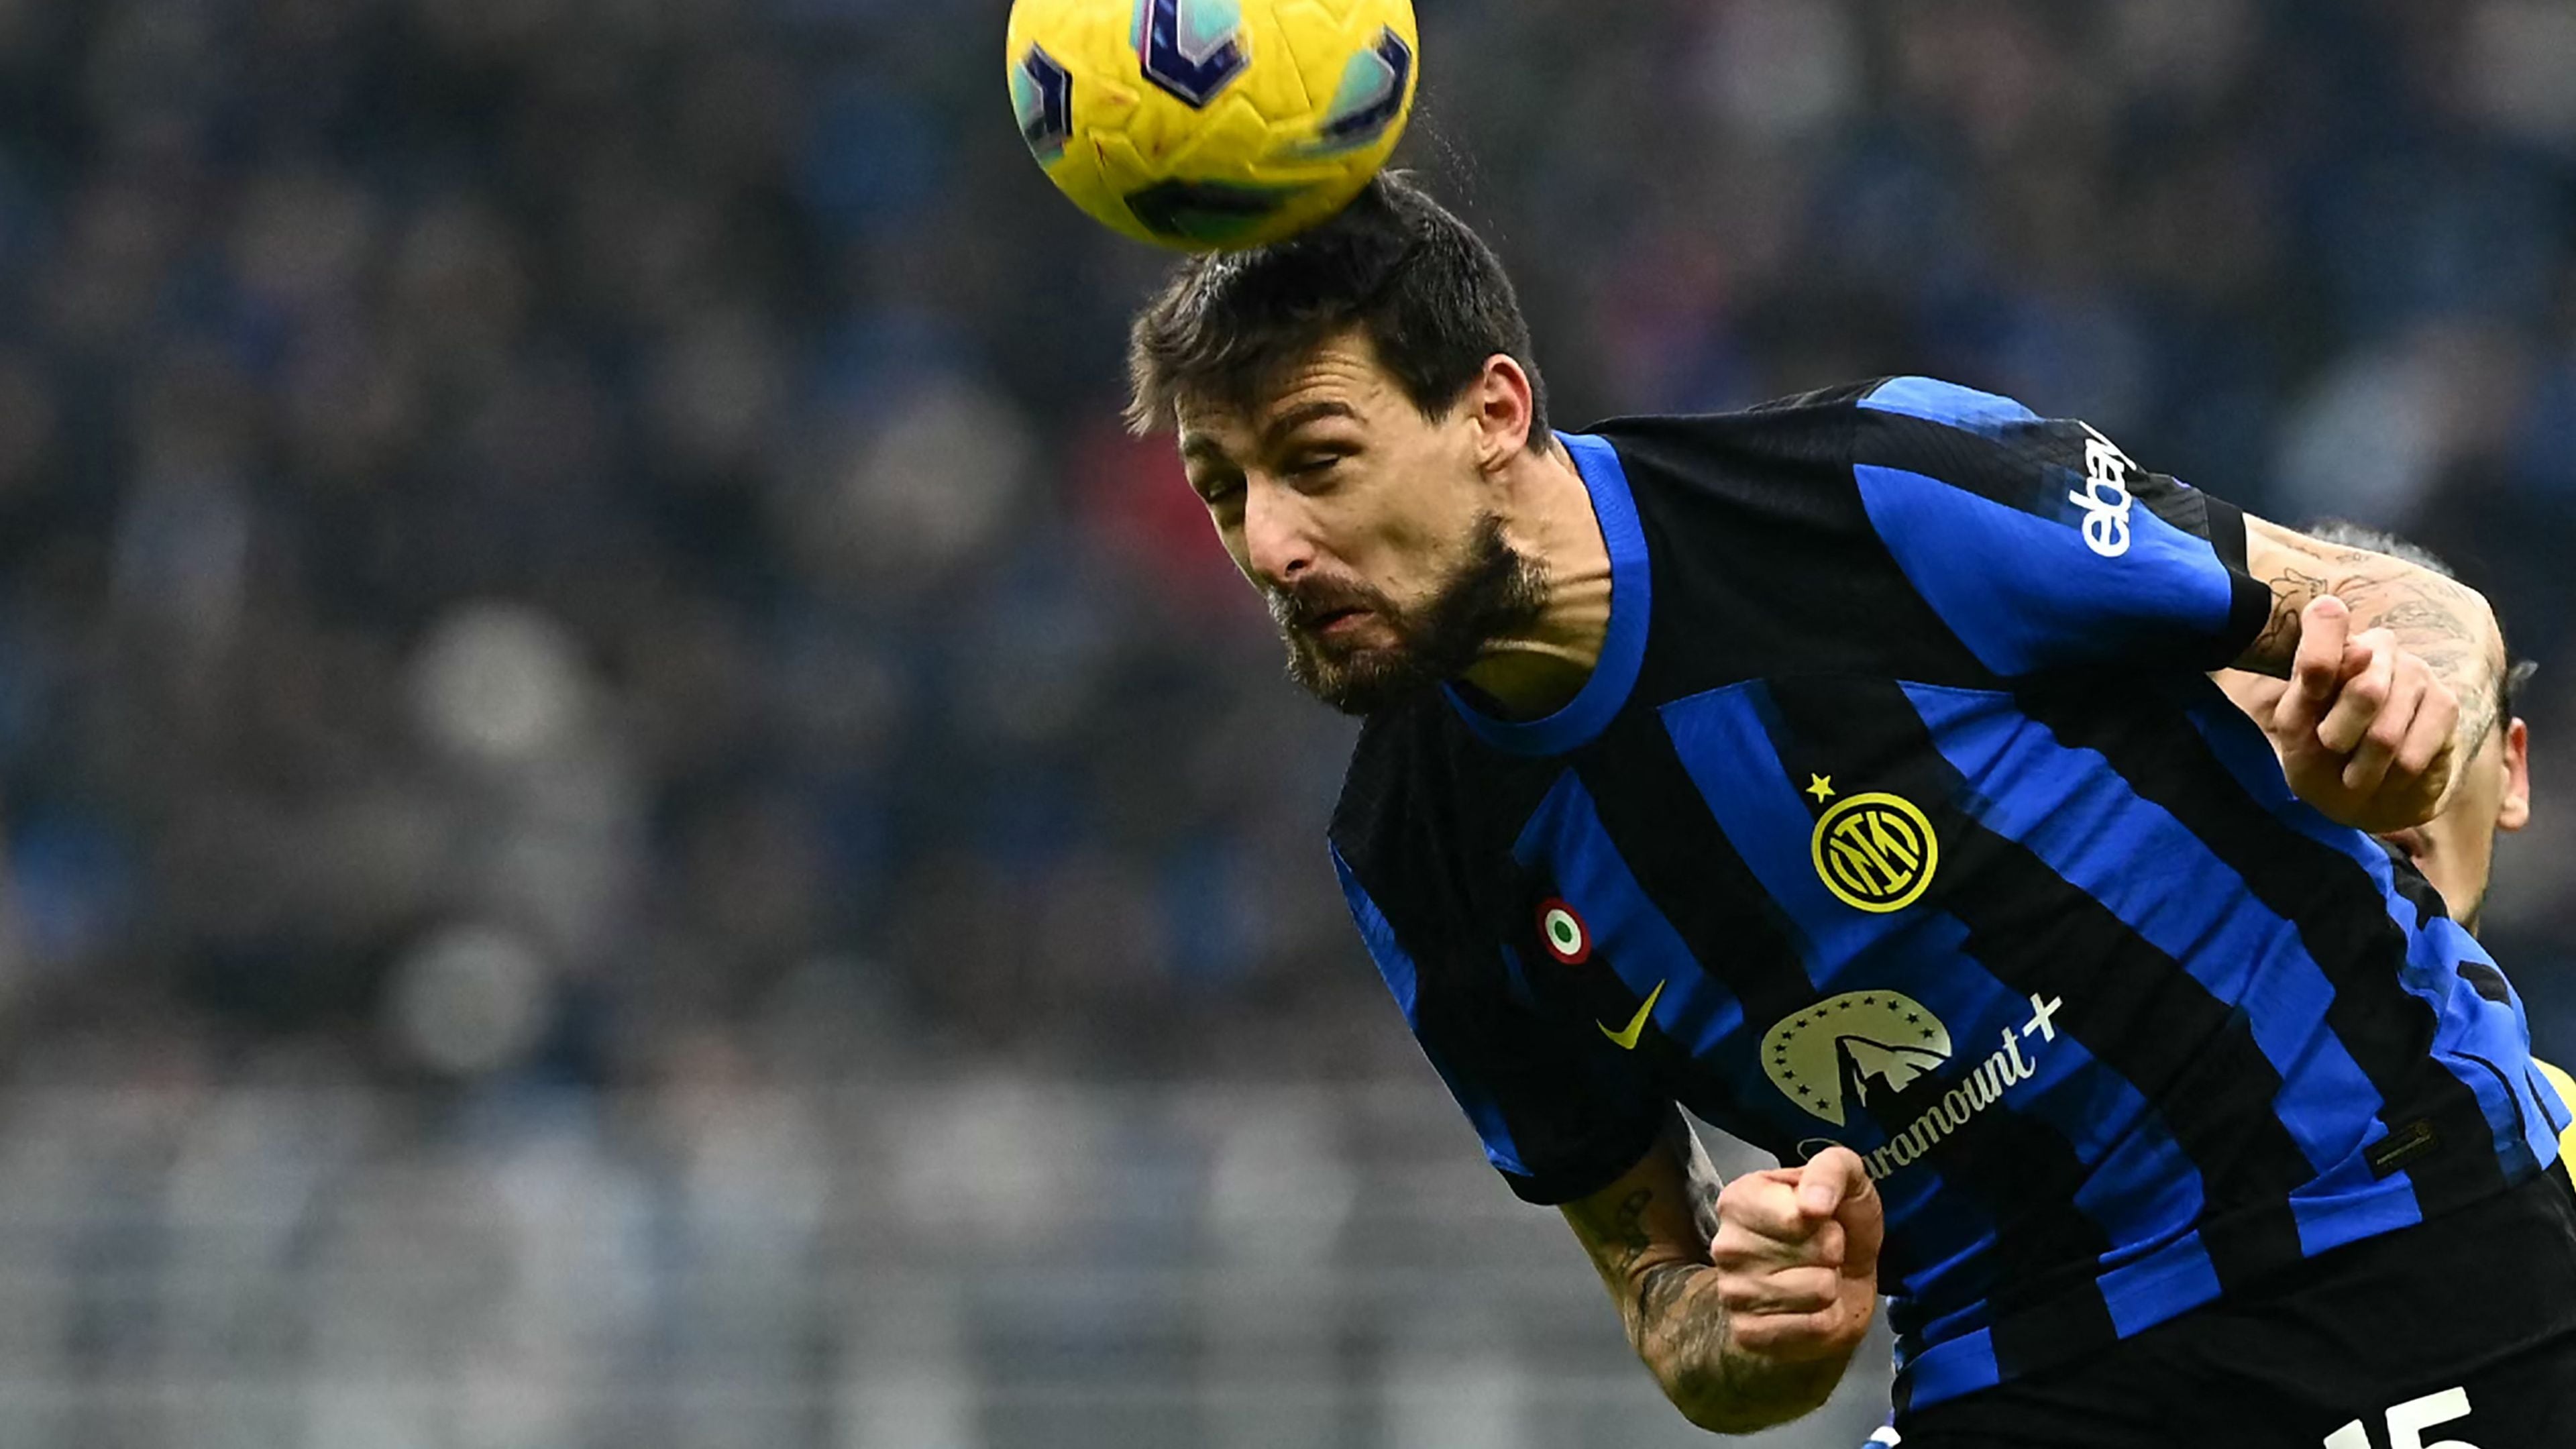 Francesco Acerbi del Inter, quien presuntamente habría proferido un insulto a Juan Jesus, despeja una pelota en la defensa del equipo.